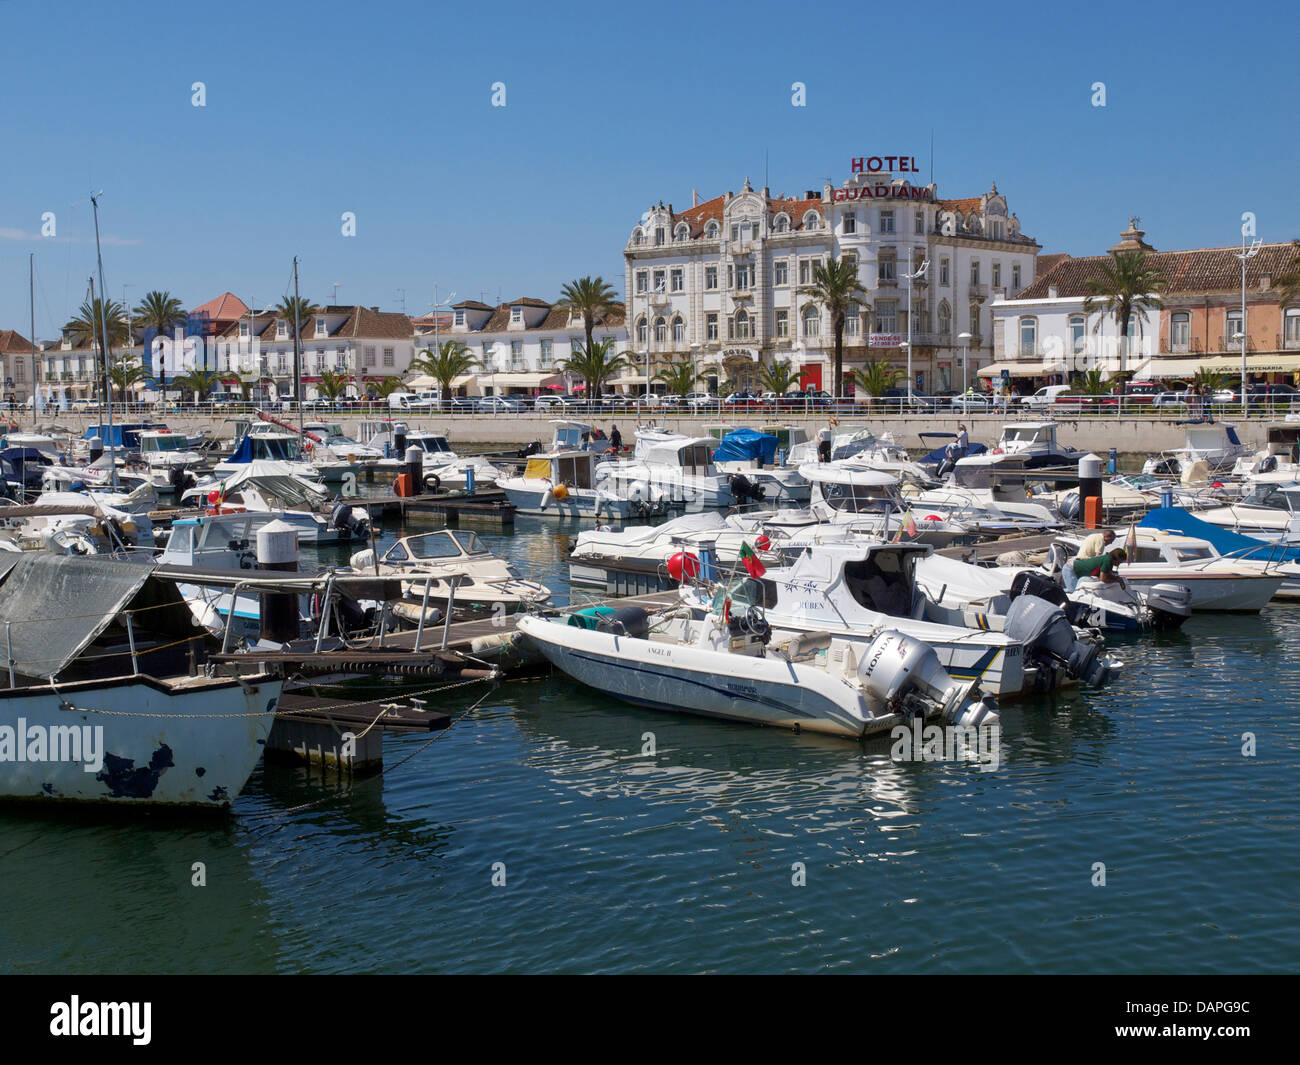 La marina de Vila Real de Santo Antonio, une ville du Portugal sur le Rio Guadiana, qui est la frontière avec l'Espagne Banque D'Images